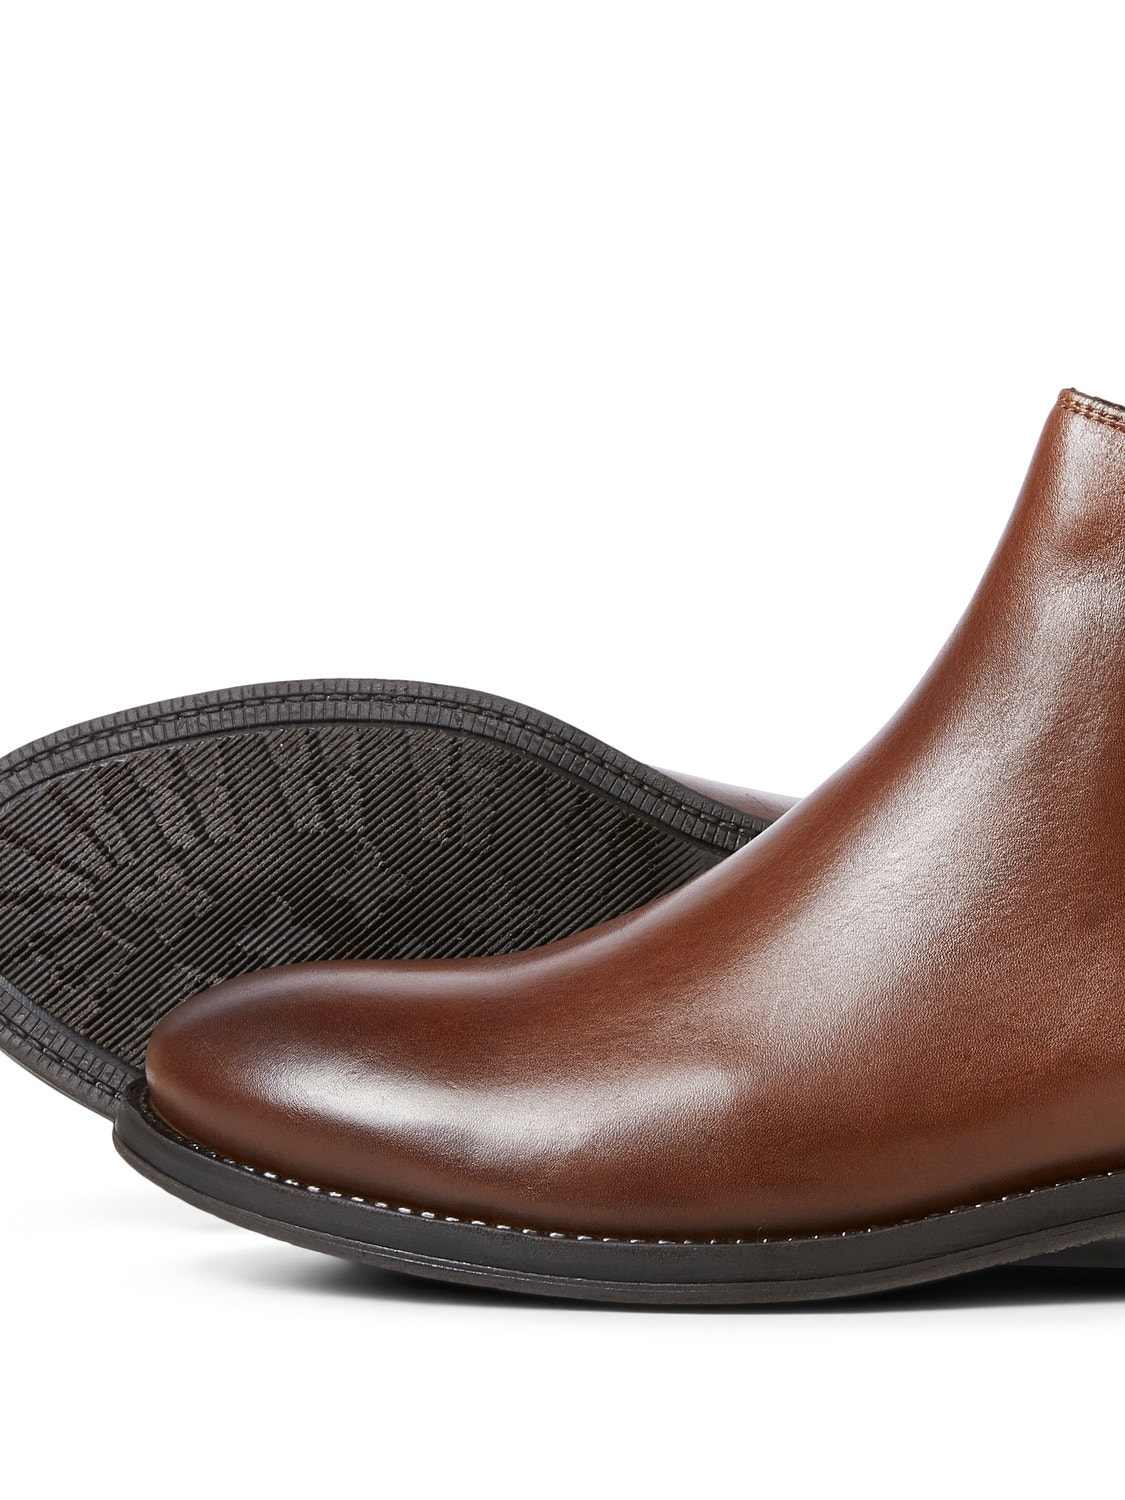 Jack & Jones Chelsea boots -Cognac - 12192758